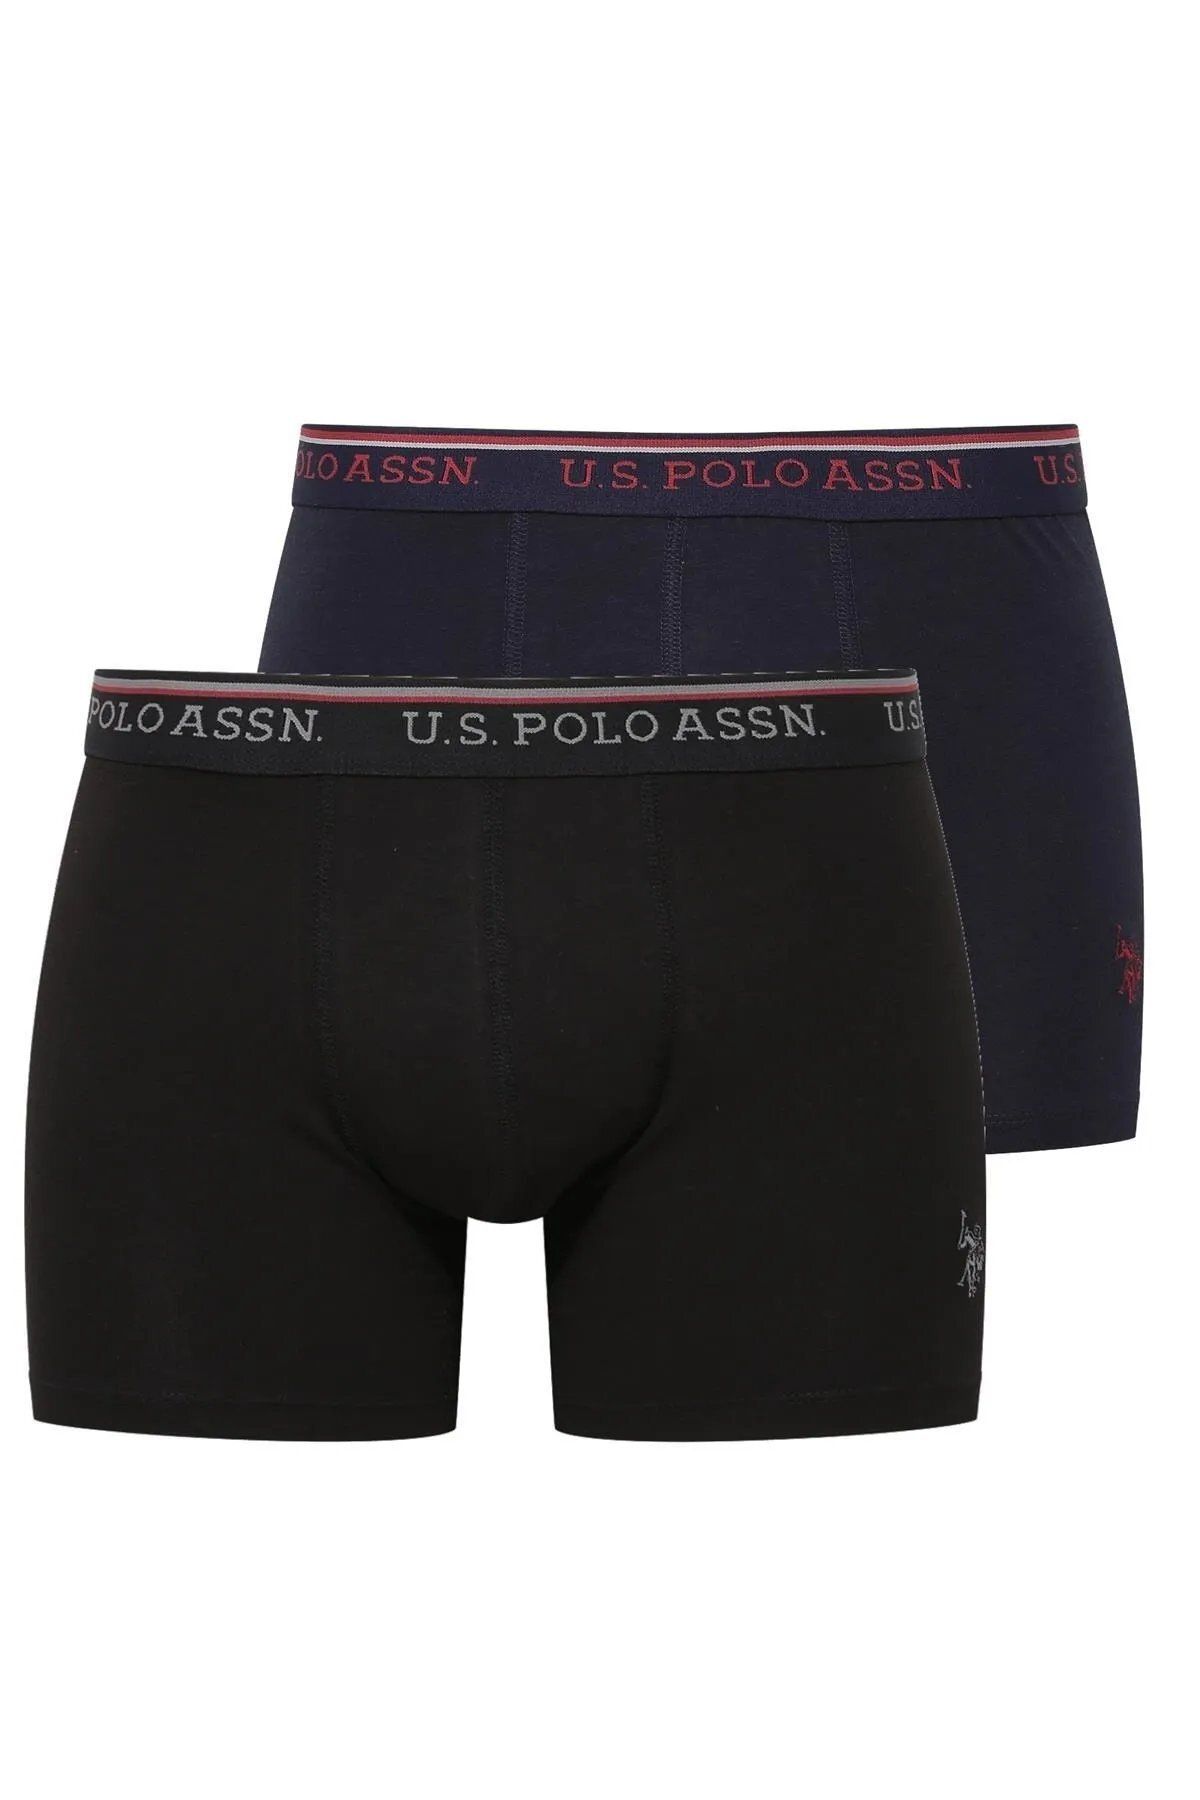 U.S. Polo Assn. U.S. Polo Assn. - Modal Erkek İç Giyim Siyah & Lacivert 2'li Boxer Set L.2.0.1.L.0.87